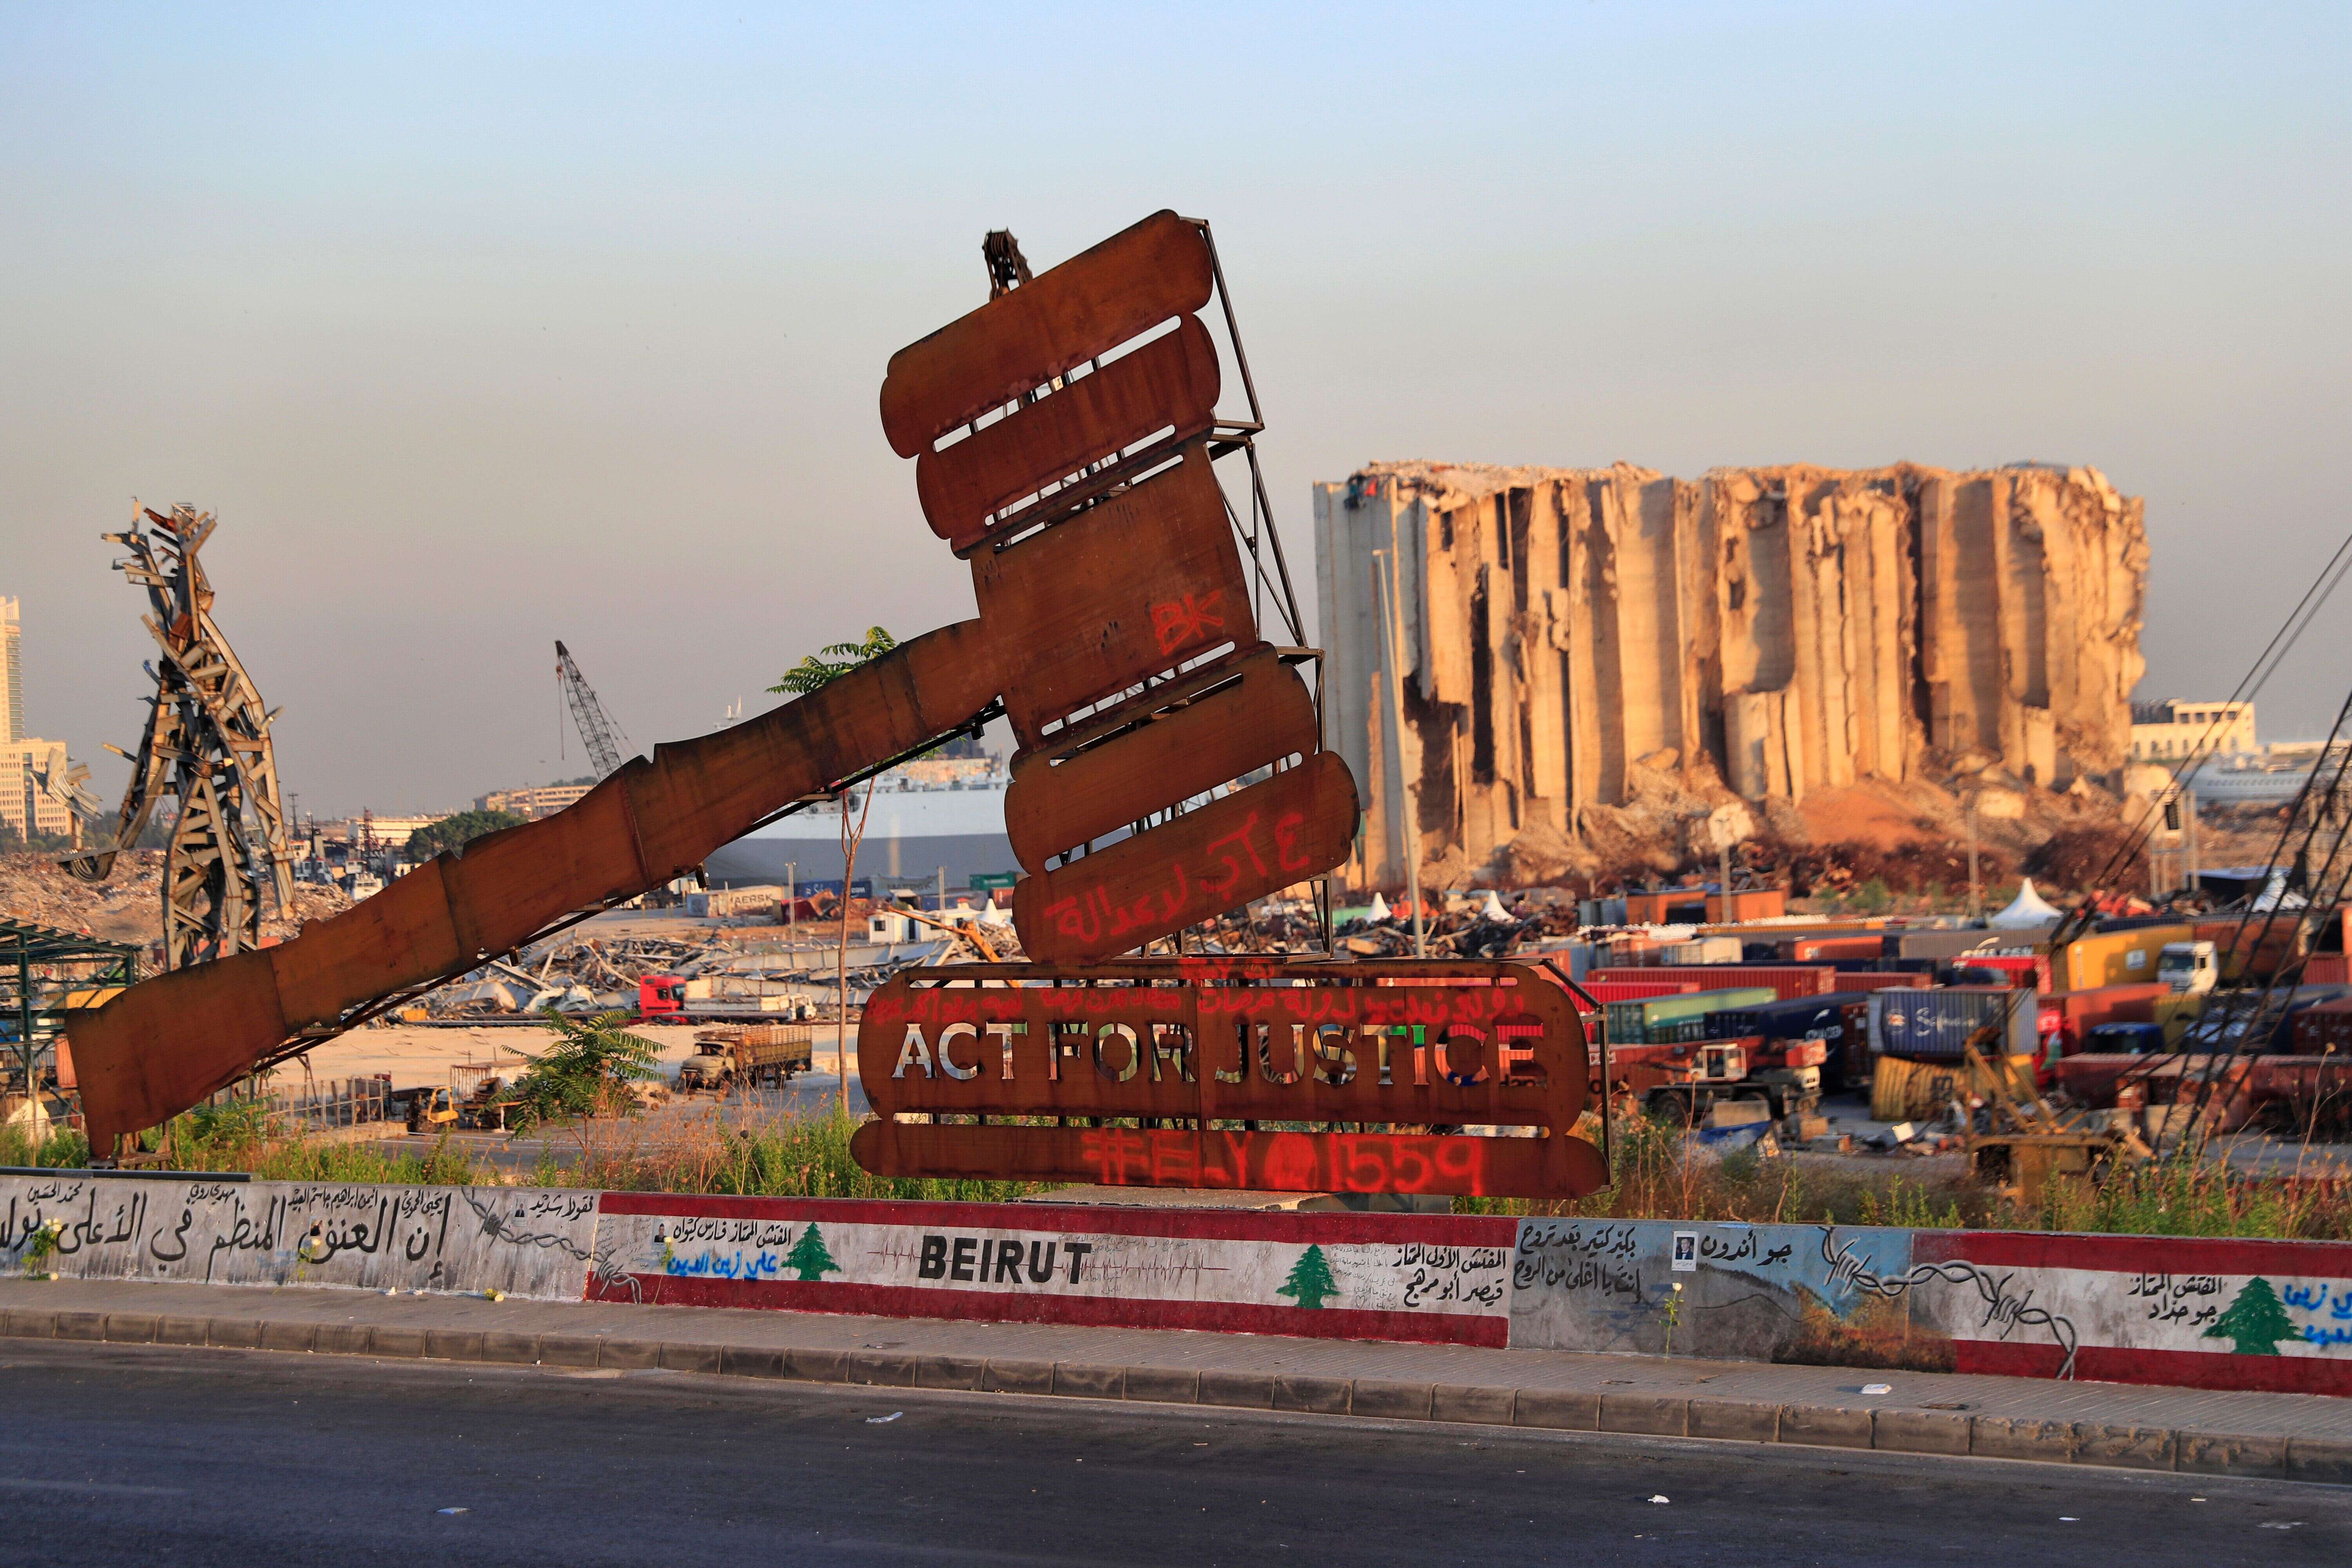 Photo prise le 4 août devant les ruines du port de Beyrouth. Le marteau est synonyme de justice, que les Libanais attendent toujours face aux lenteurs de l'enquête.(AP Photo/Hussein Malla, File)